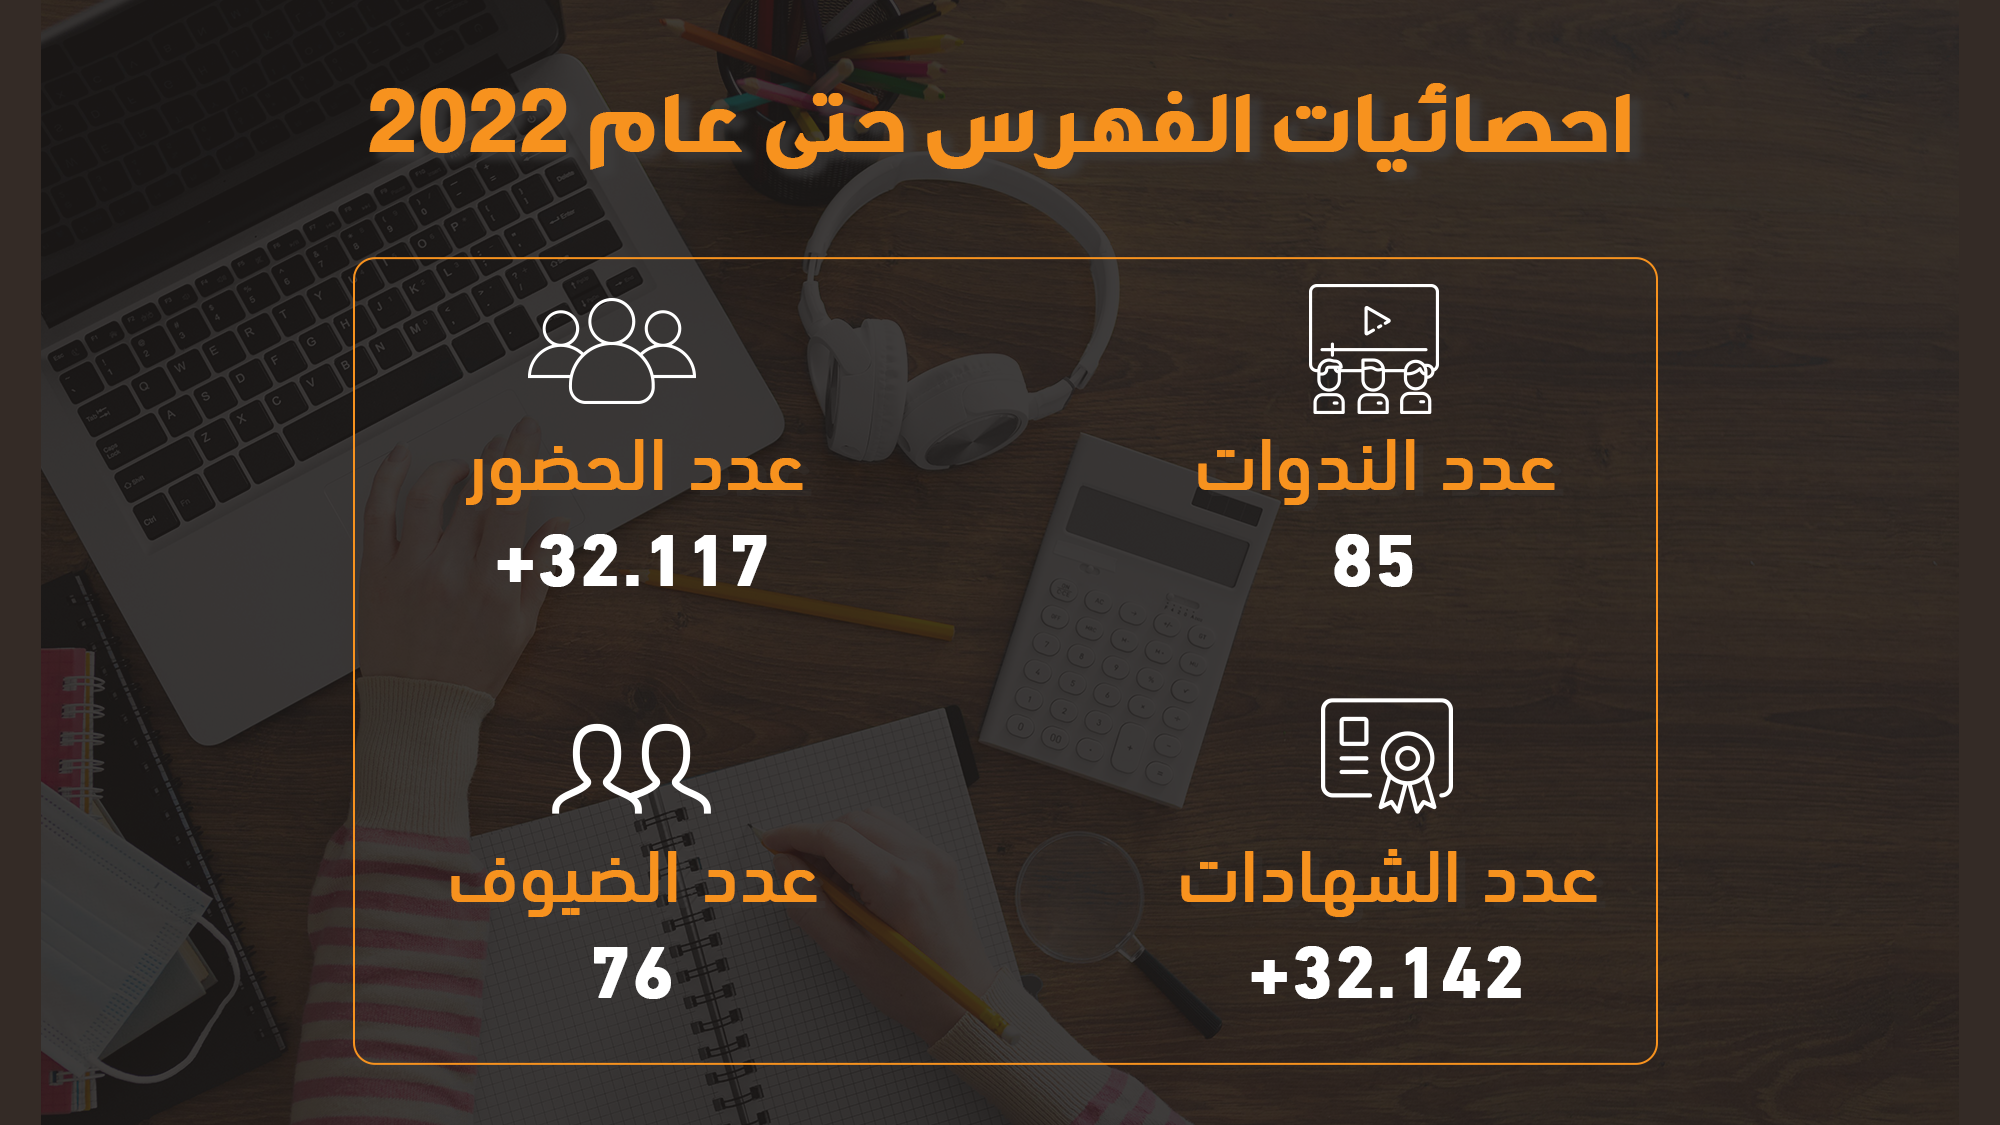 البرنامج المعرفي للفهرس العربي الموحد في أرقام